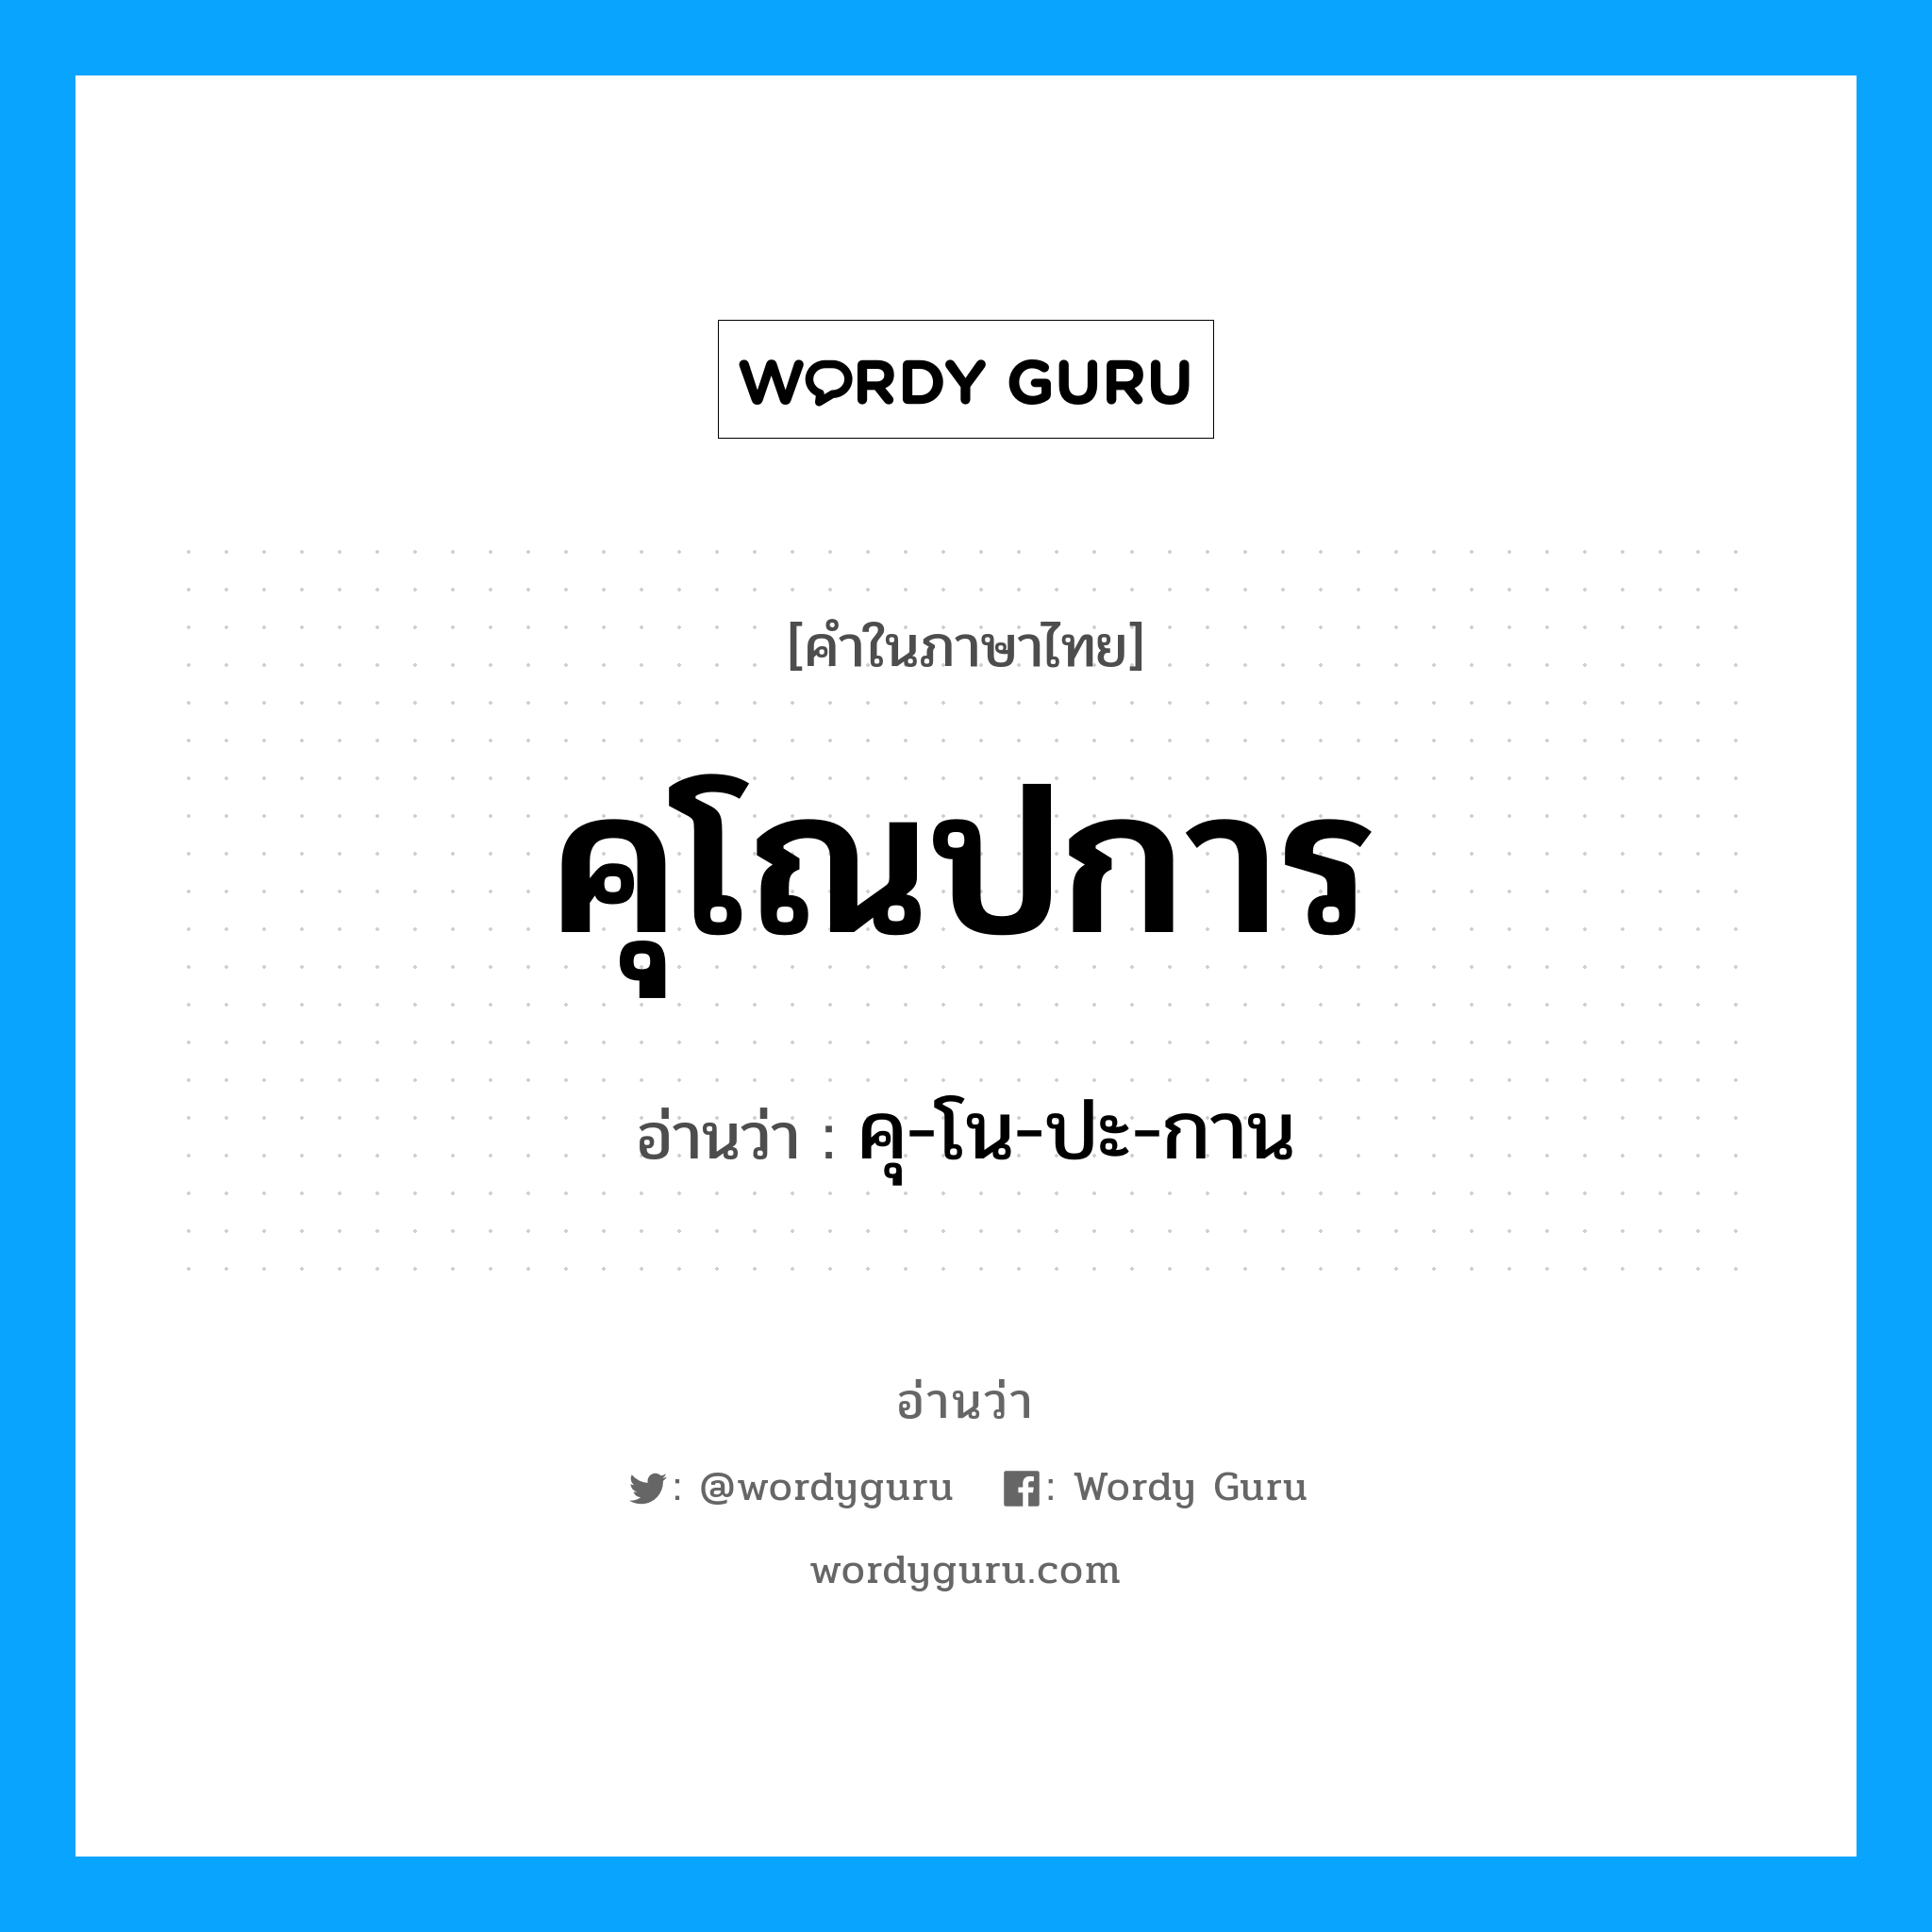 คุ-โน-ปะ-กาน เป็นคำอ่านของคำไหน?, คำในภาษาไทย คุ-โน-ปะ-กาน อ่านว่า คุโณปการ